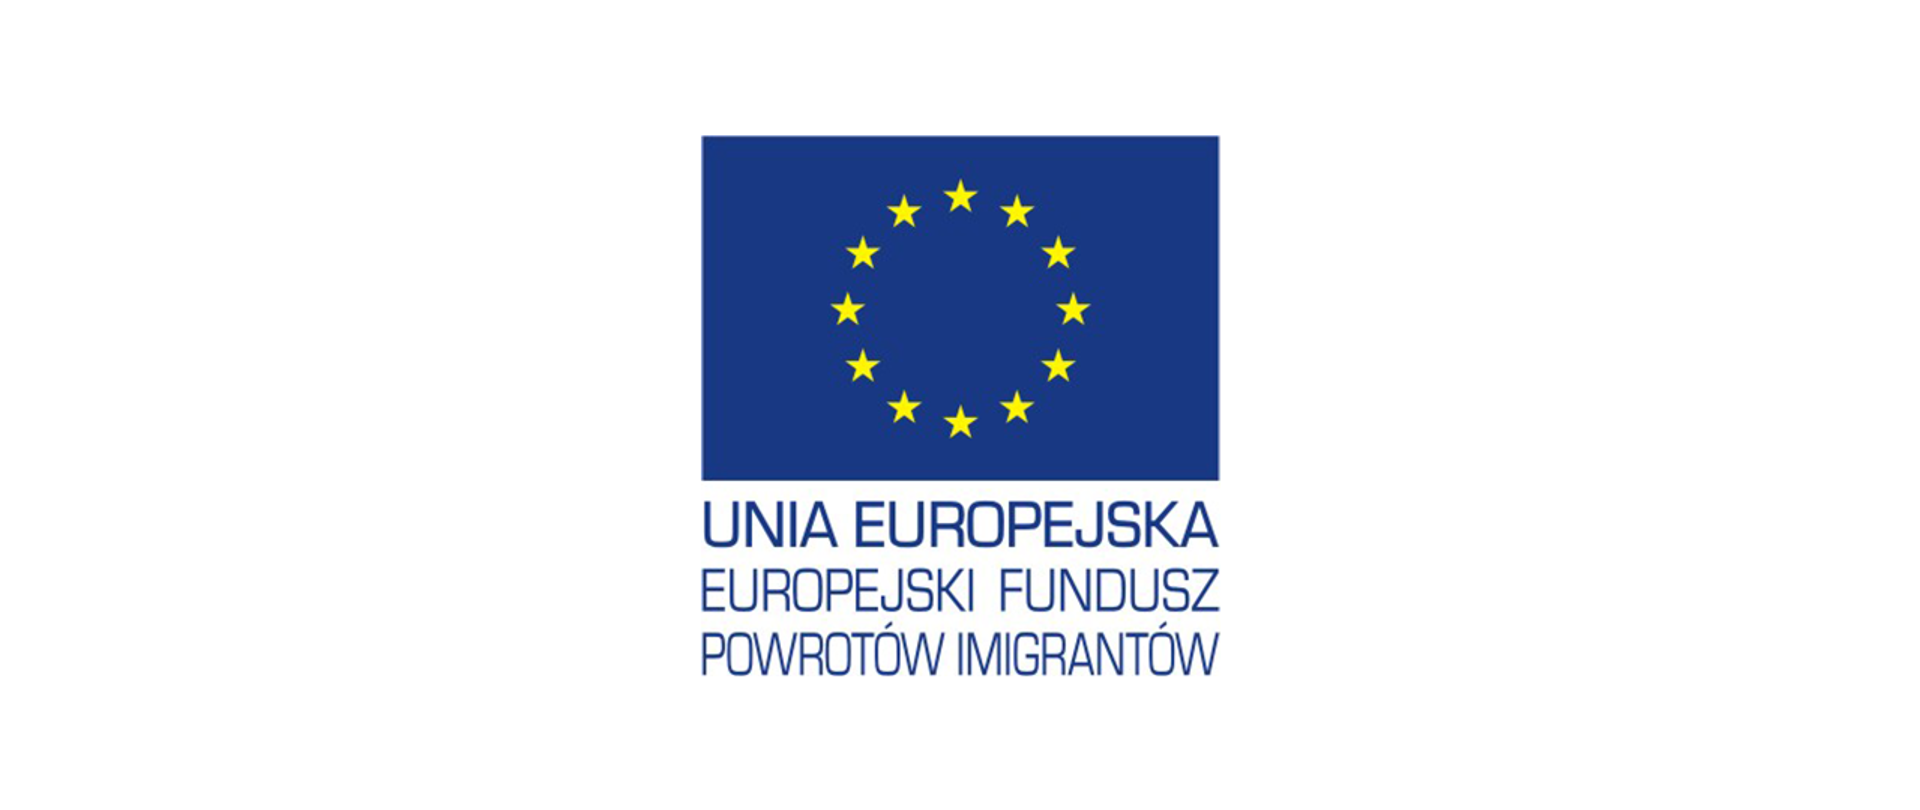 Unia Europejska - Europejski Fundusz Powrotów Imigrantów